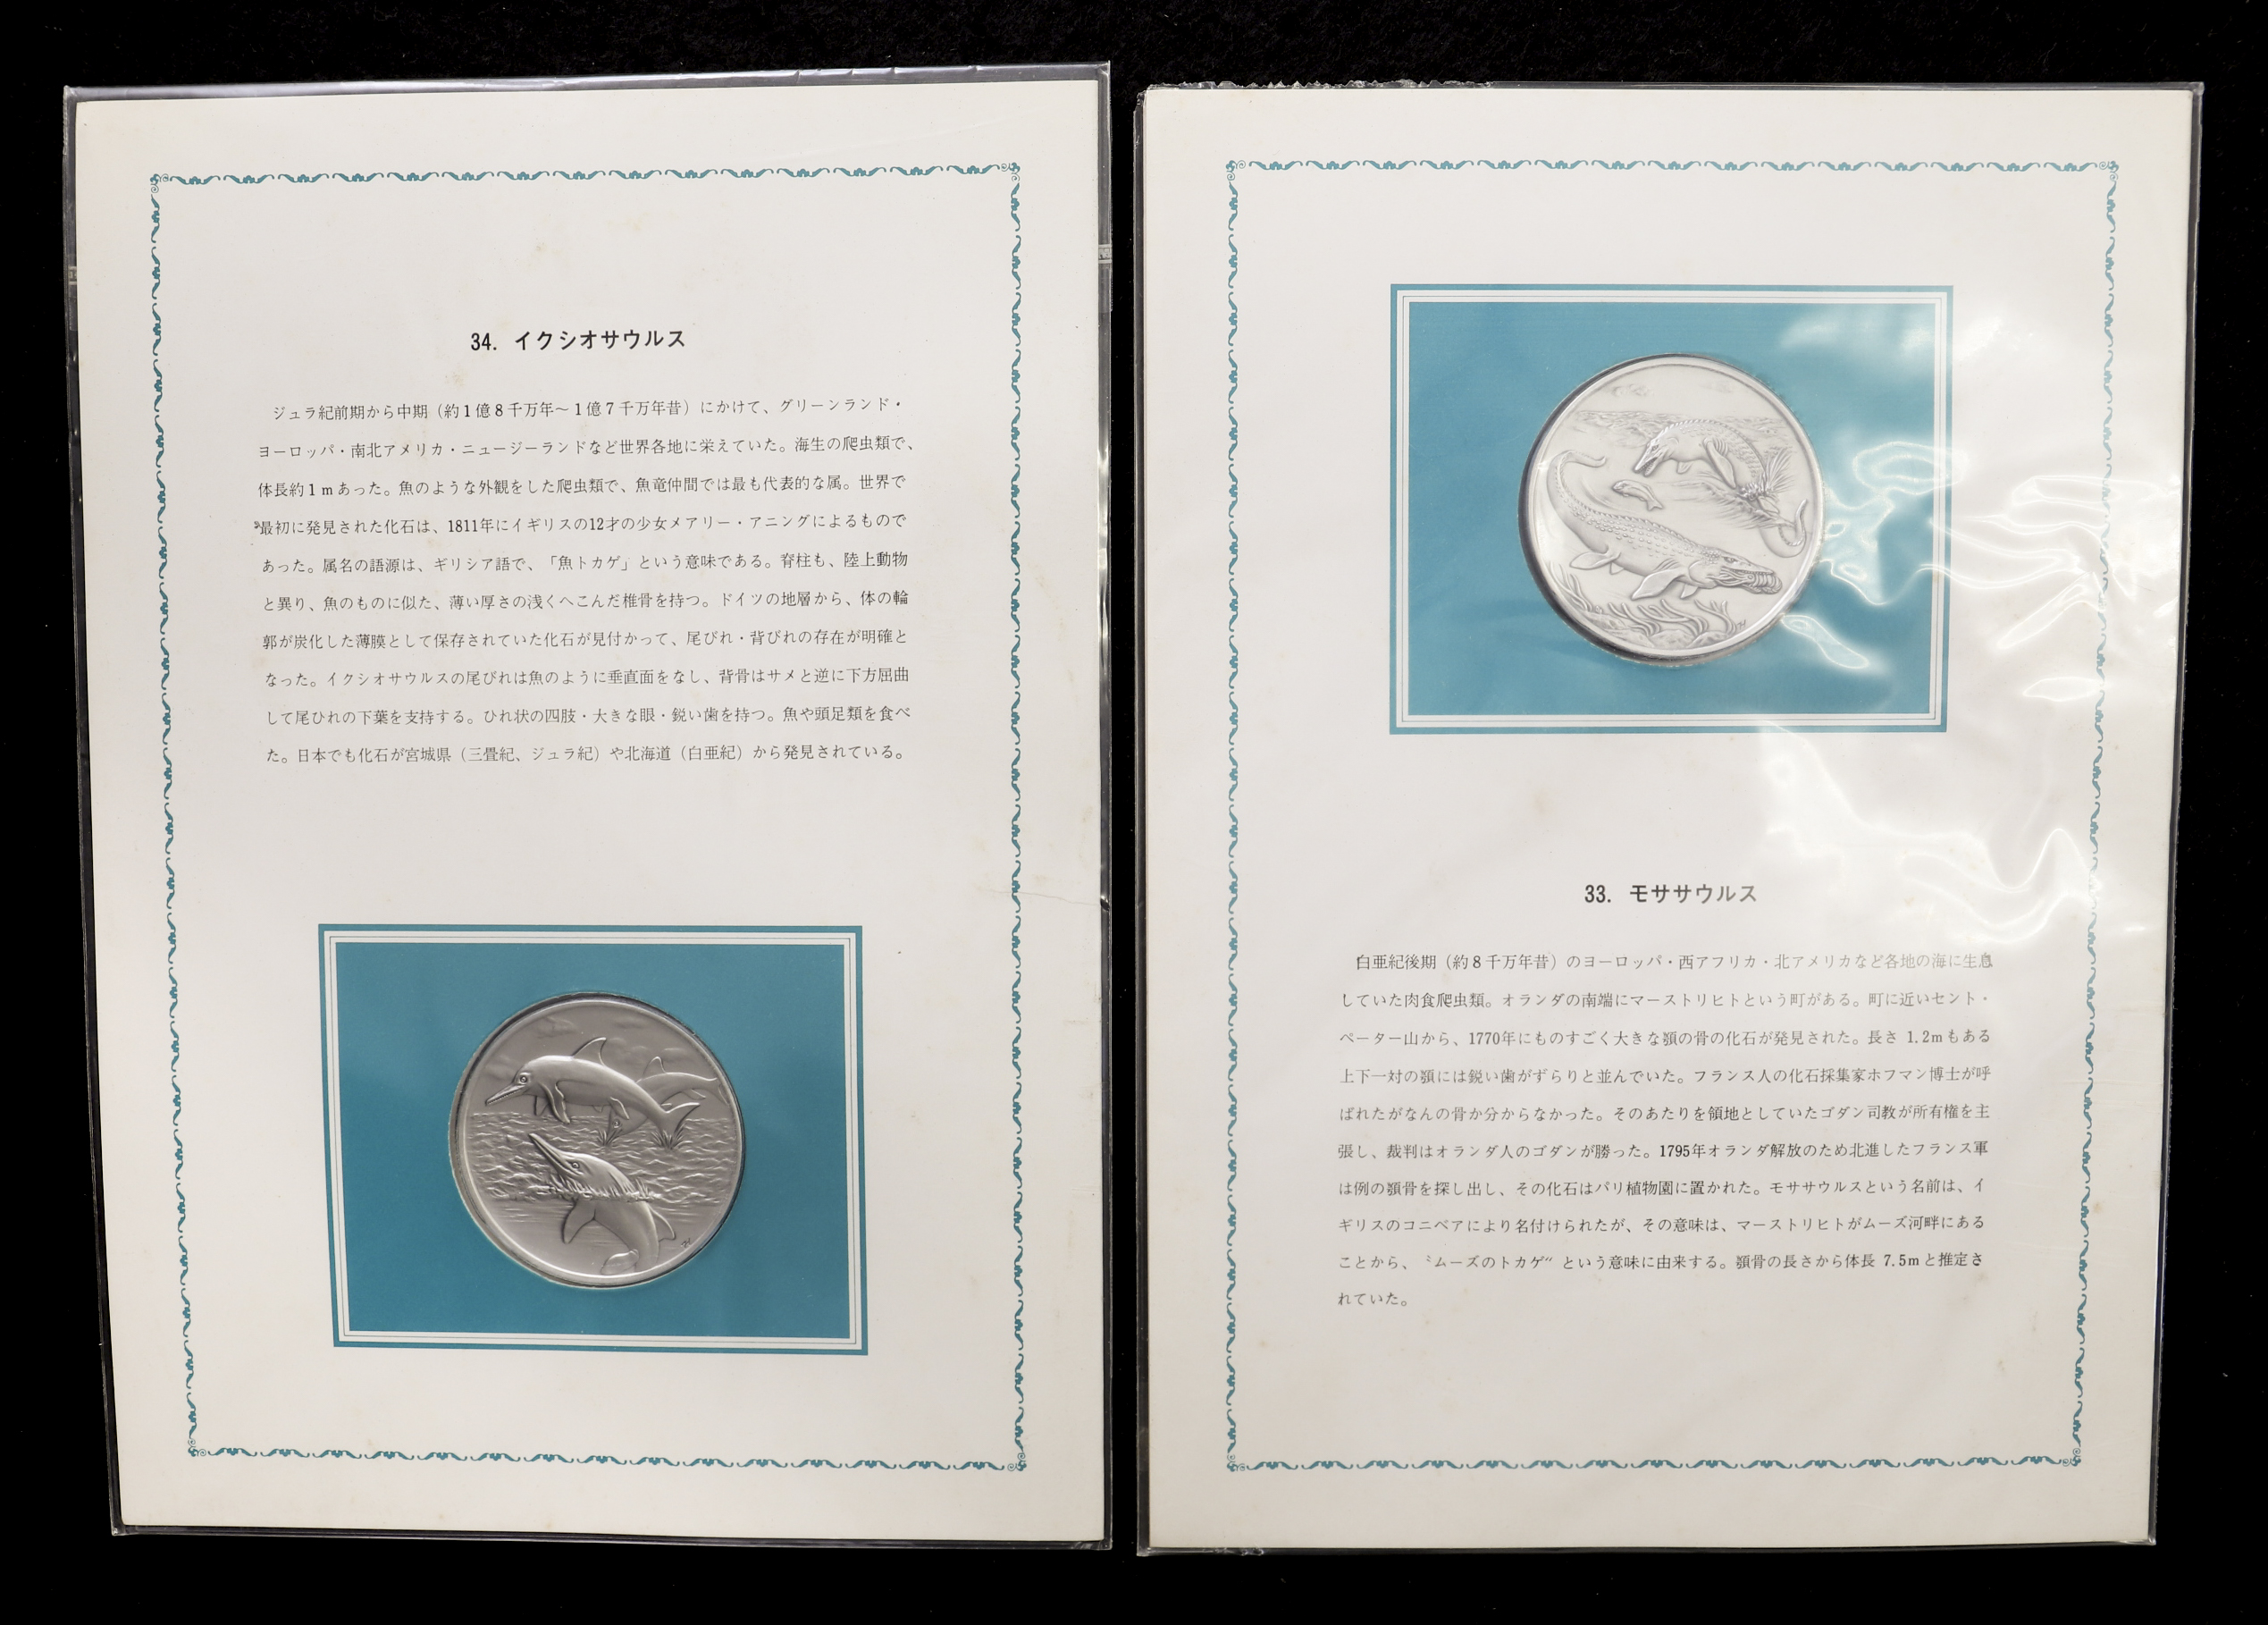 オークション 記念切手と銀メダル6セット 重約640g 紙ホルダーを含む